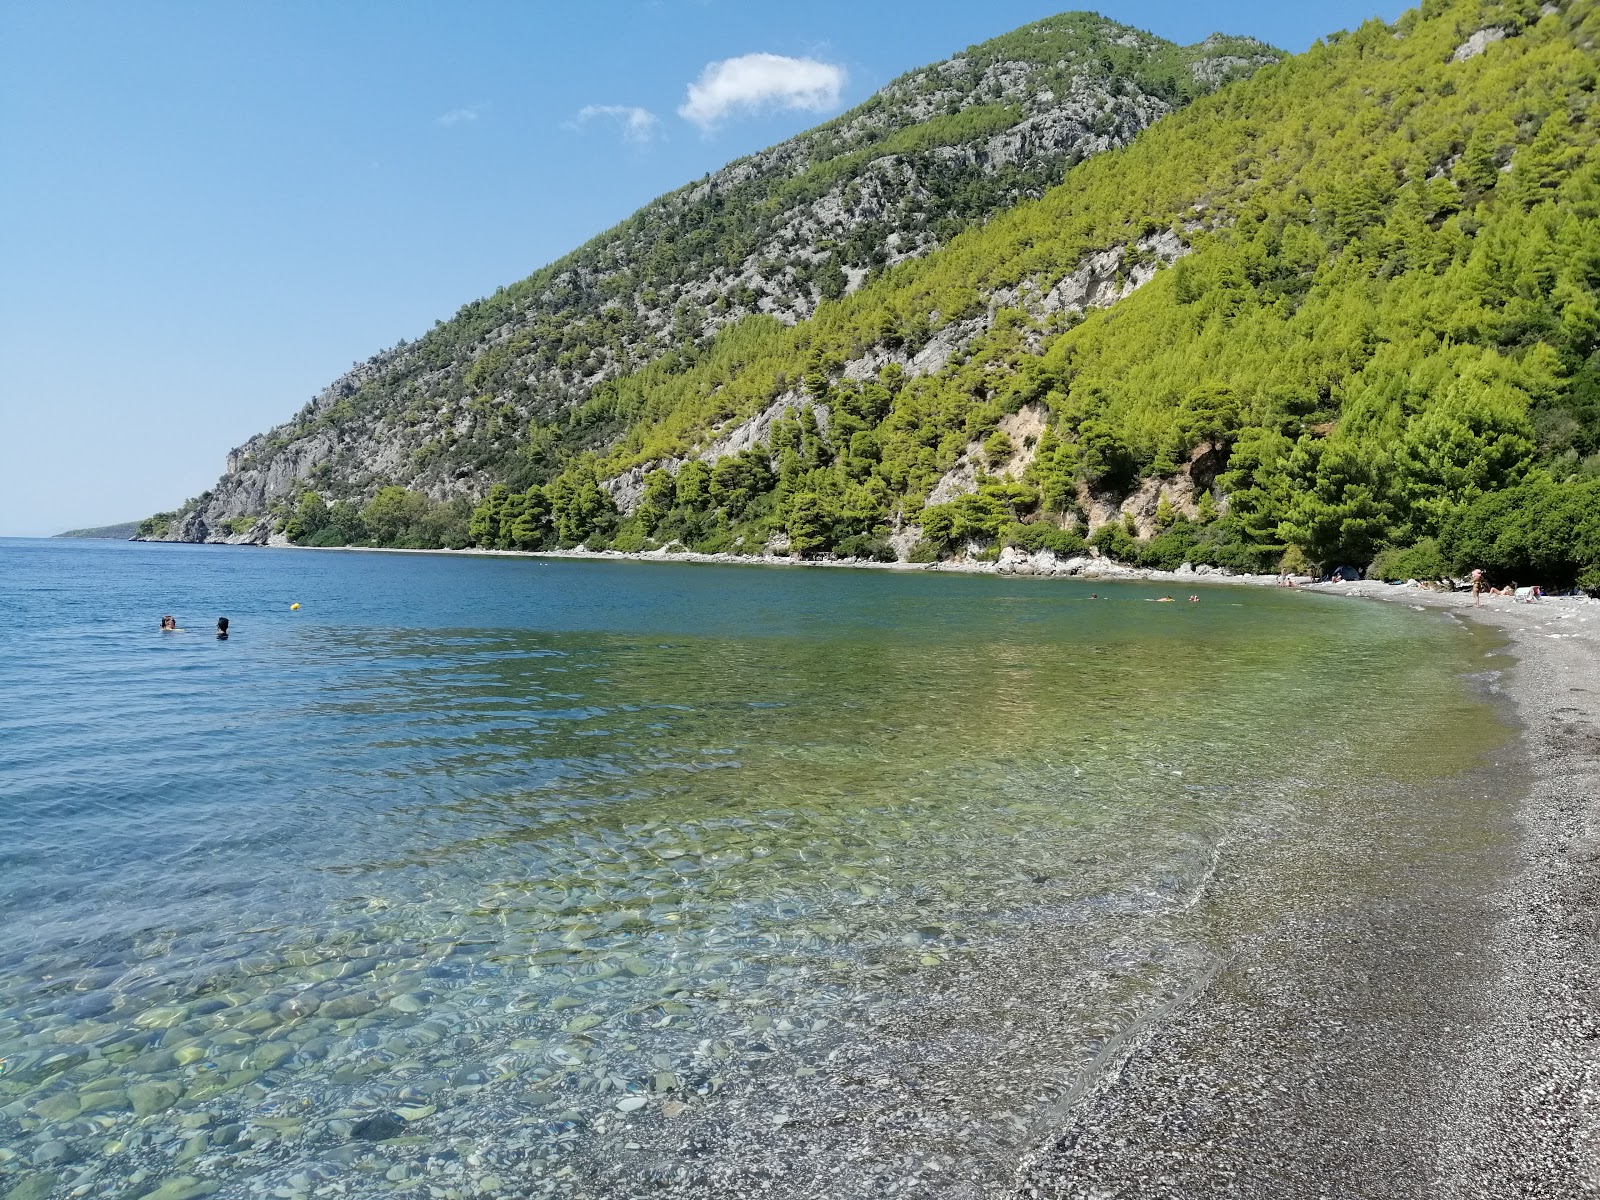 Fotografija Dafni of Evia beach nahaja se v naravnem okolju